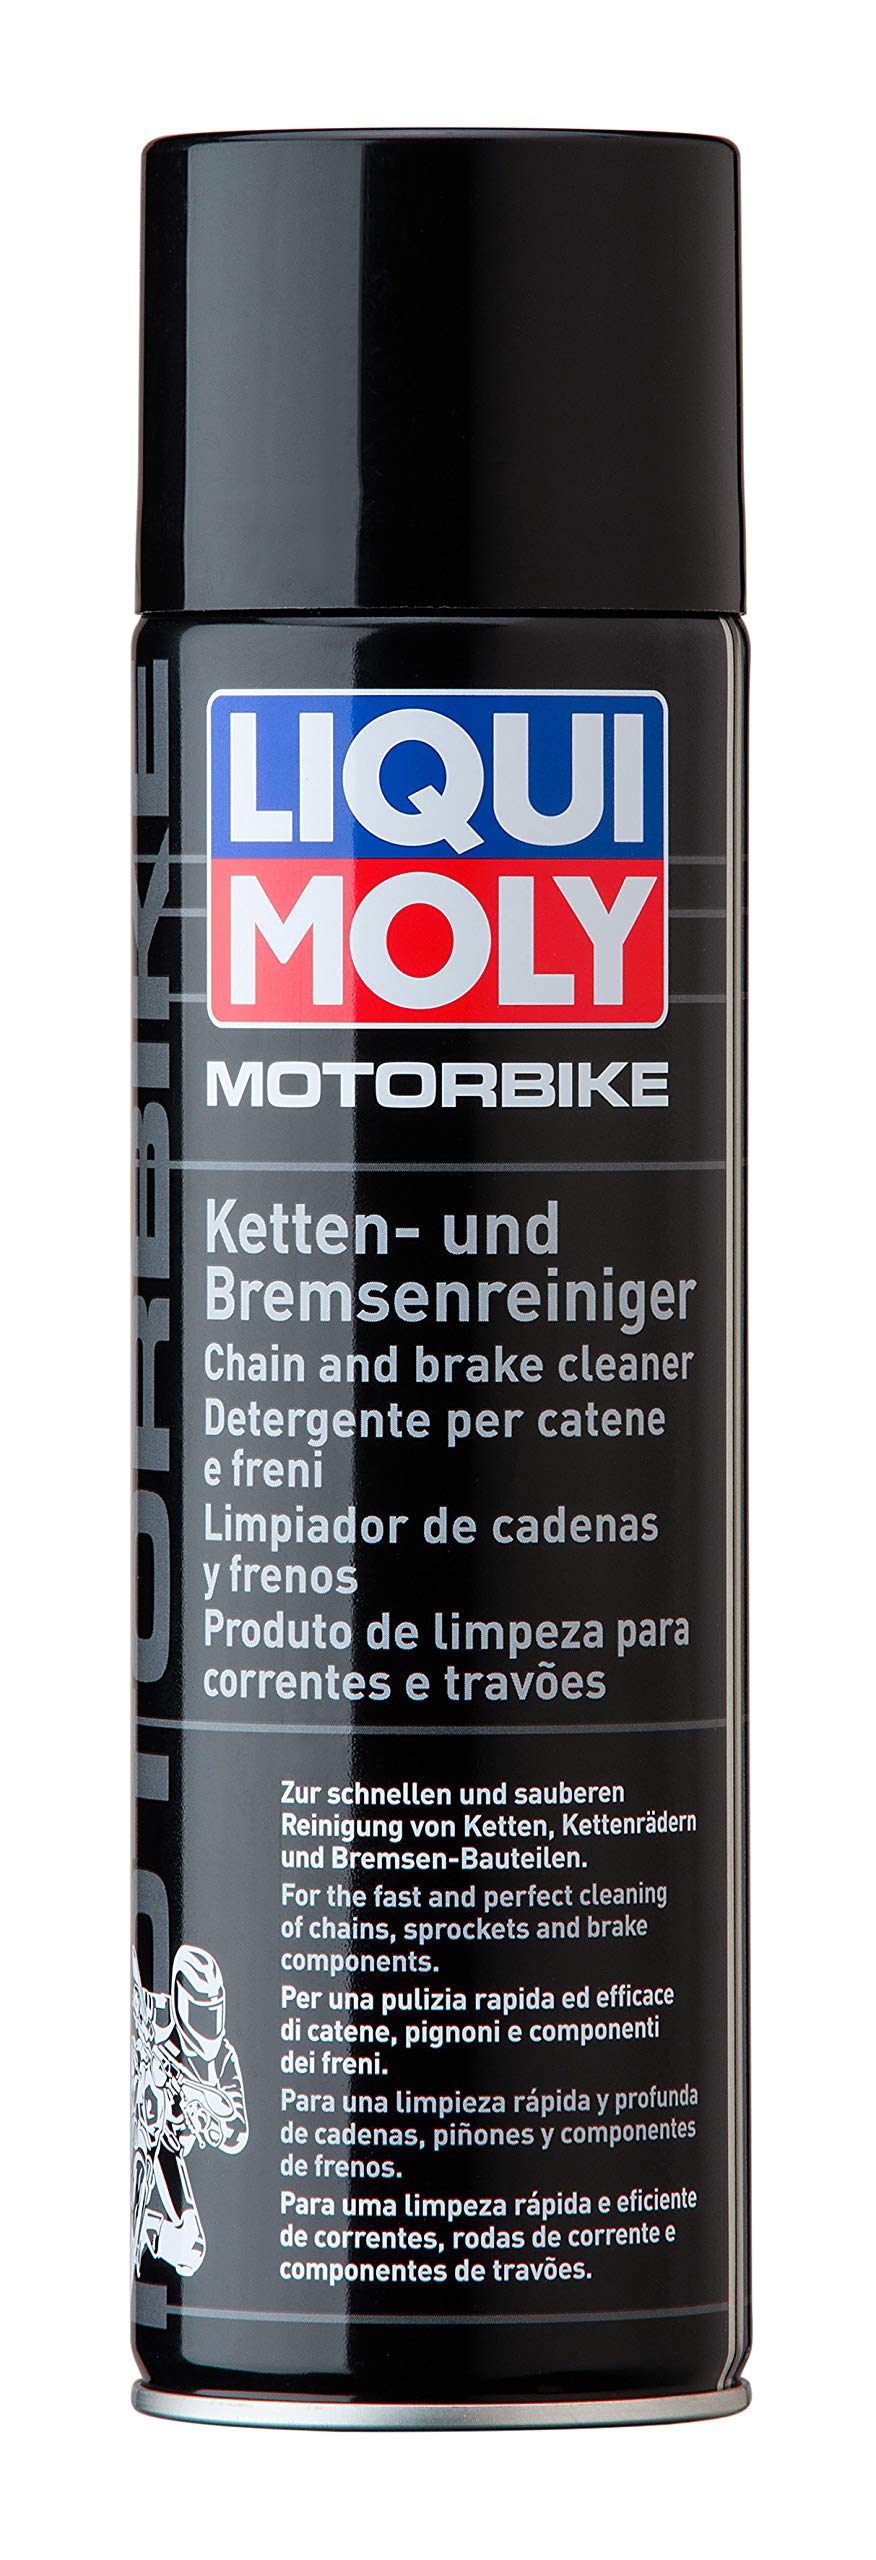 LIQUI MOLY Motorbike Ketten- und Bremsenreiniger | 500 ml | Motorrad | Kettenreiniger | Bremsenreiniger | Kettenpflege | Schnellreiniger | Art.-Nr.: 1602 von Liqui Moly